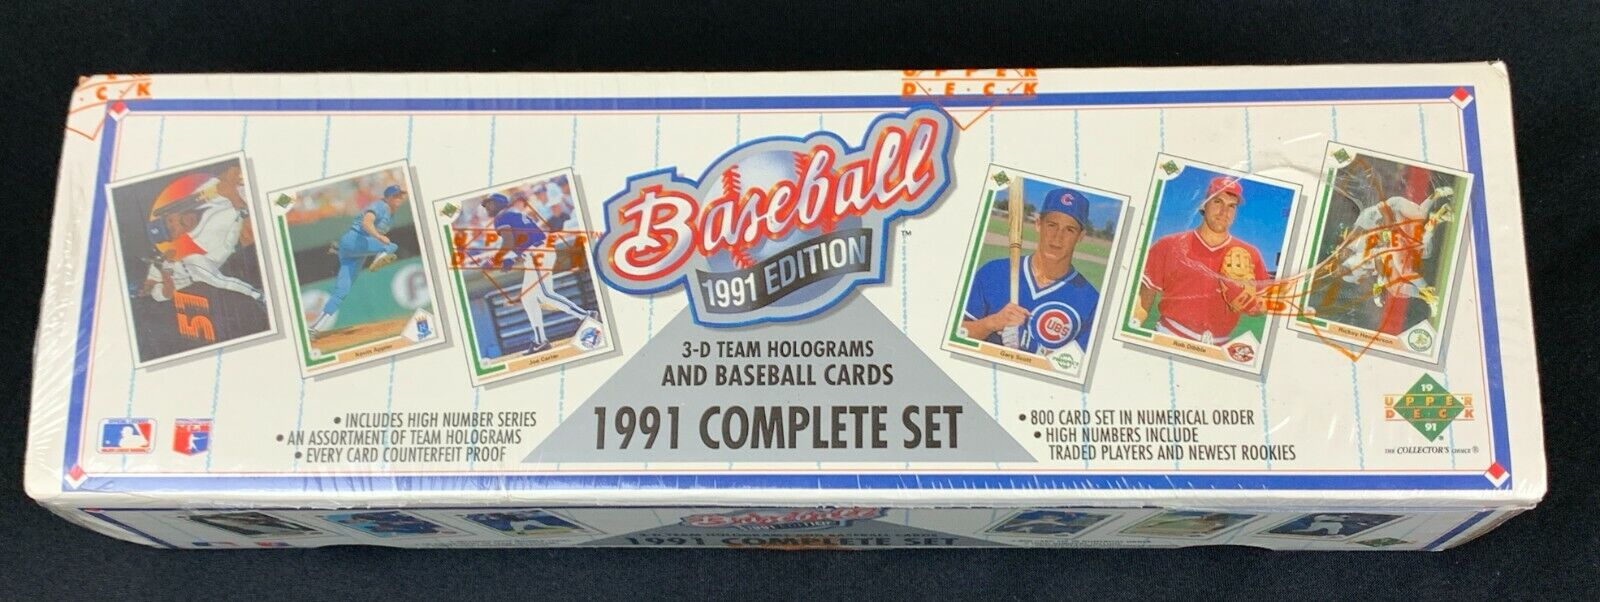 1991 Upper Deck Baseball Cards Complete Set Factory Sealed Box MLB 3D Hologram